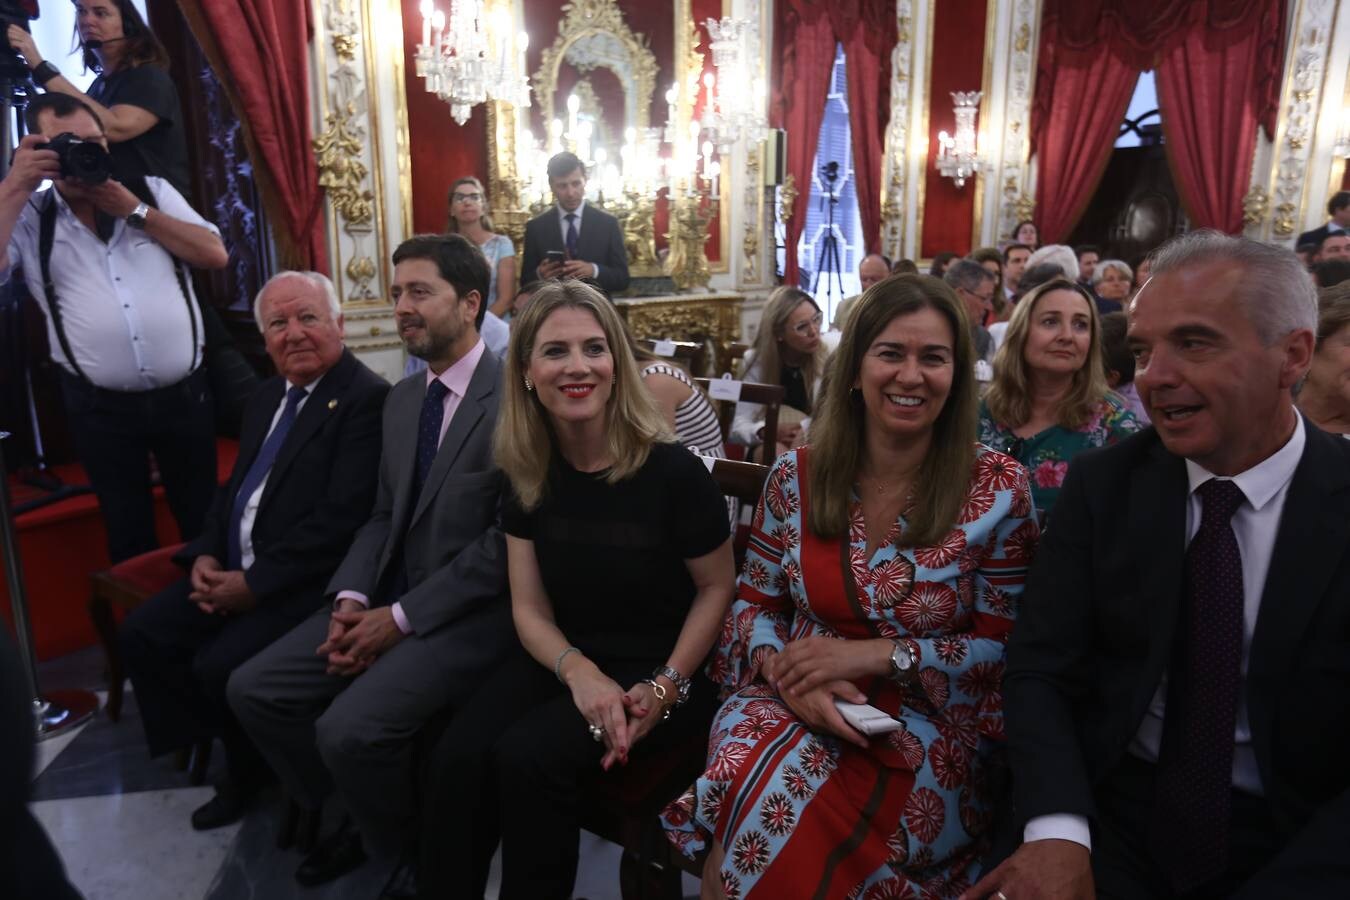 FOTOS: Caras nuevas y rostros conocidos en la Diputación de Cádiz